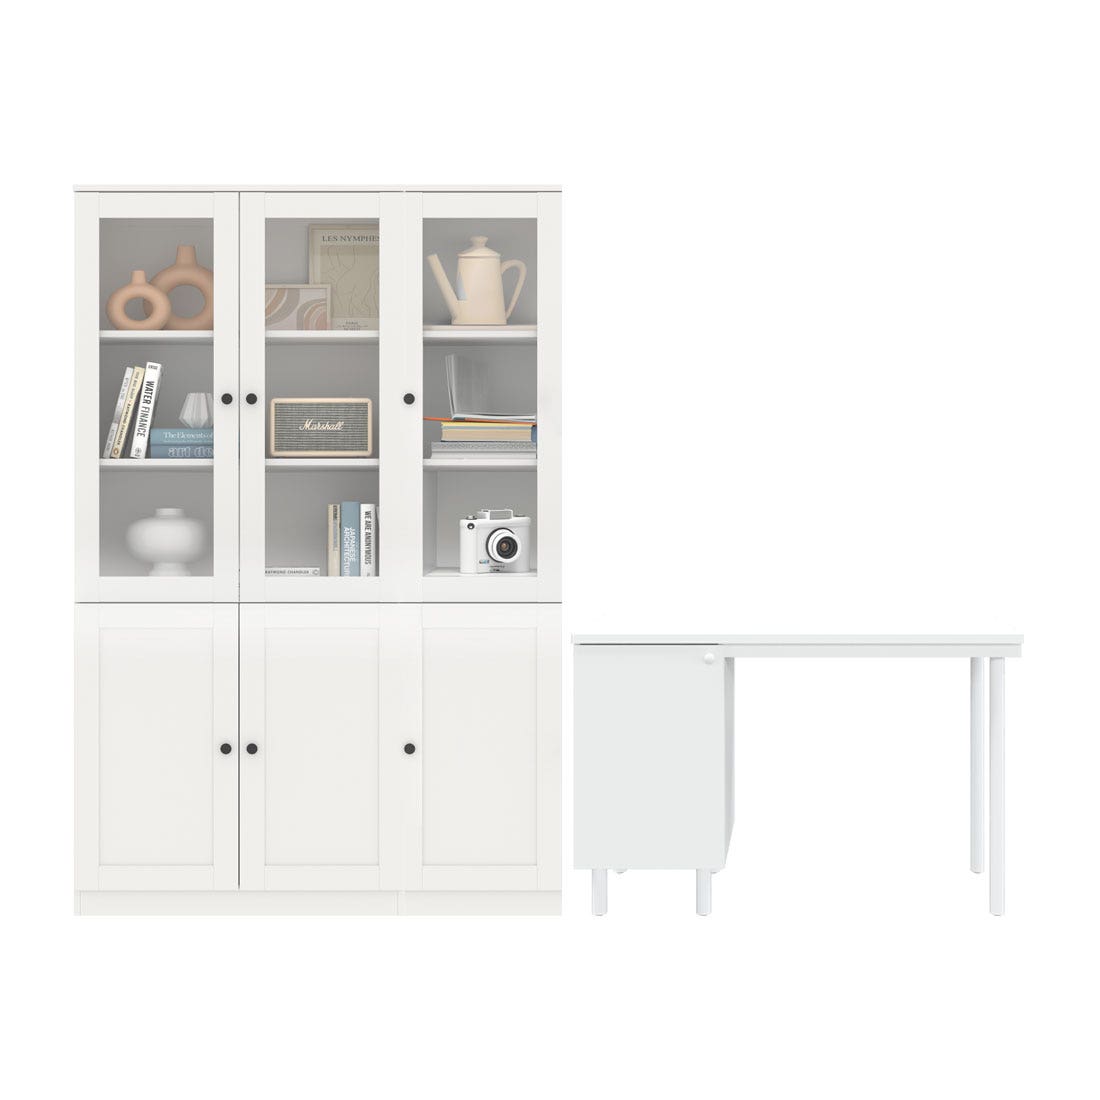 ตู้หนังสือ รุ่น Contini Plus & โต๊ะทำงาน รุ่น Pearliz สีขาว01